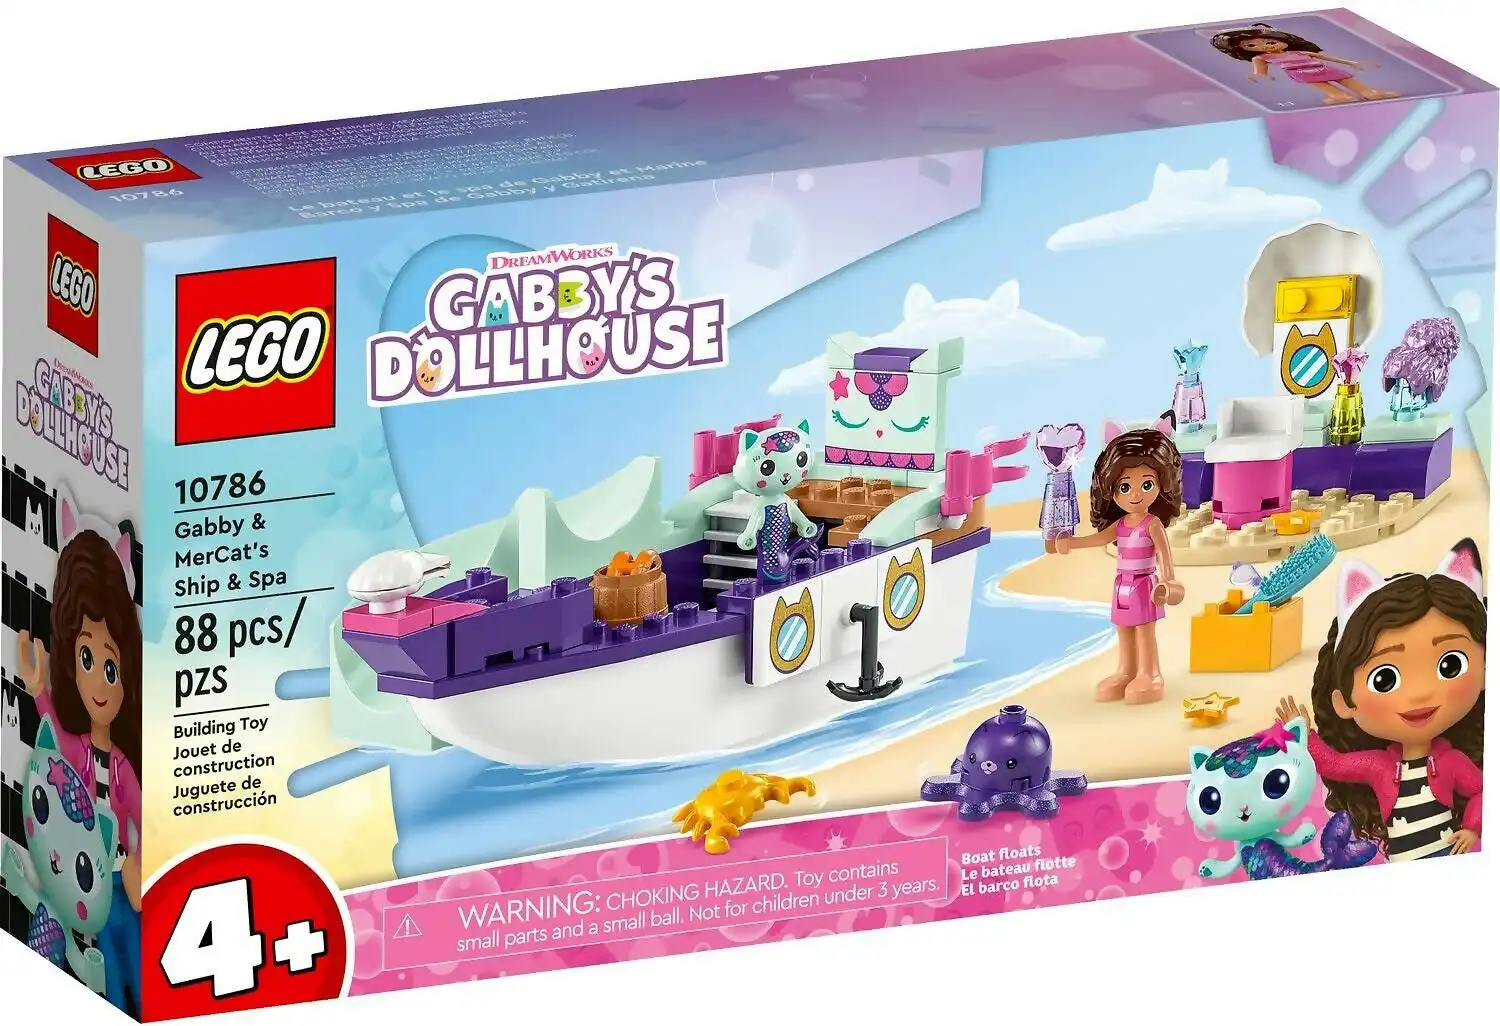 LEGO 10786 Gabby & MerCat's Ship & Spa - Gabby's Dollhouse 4+